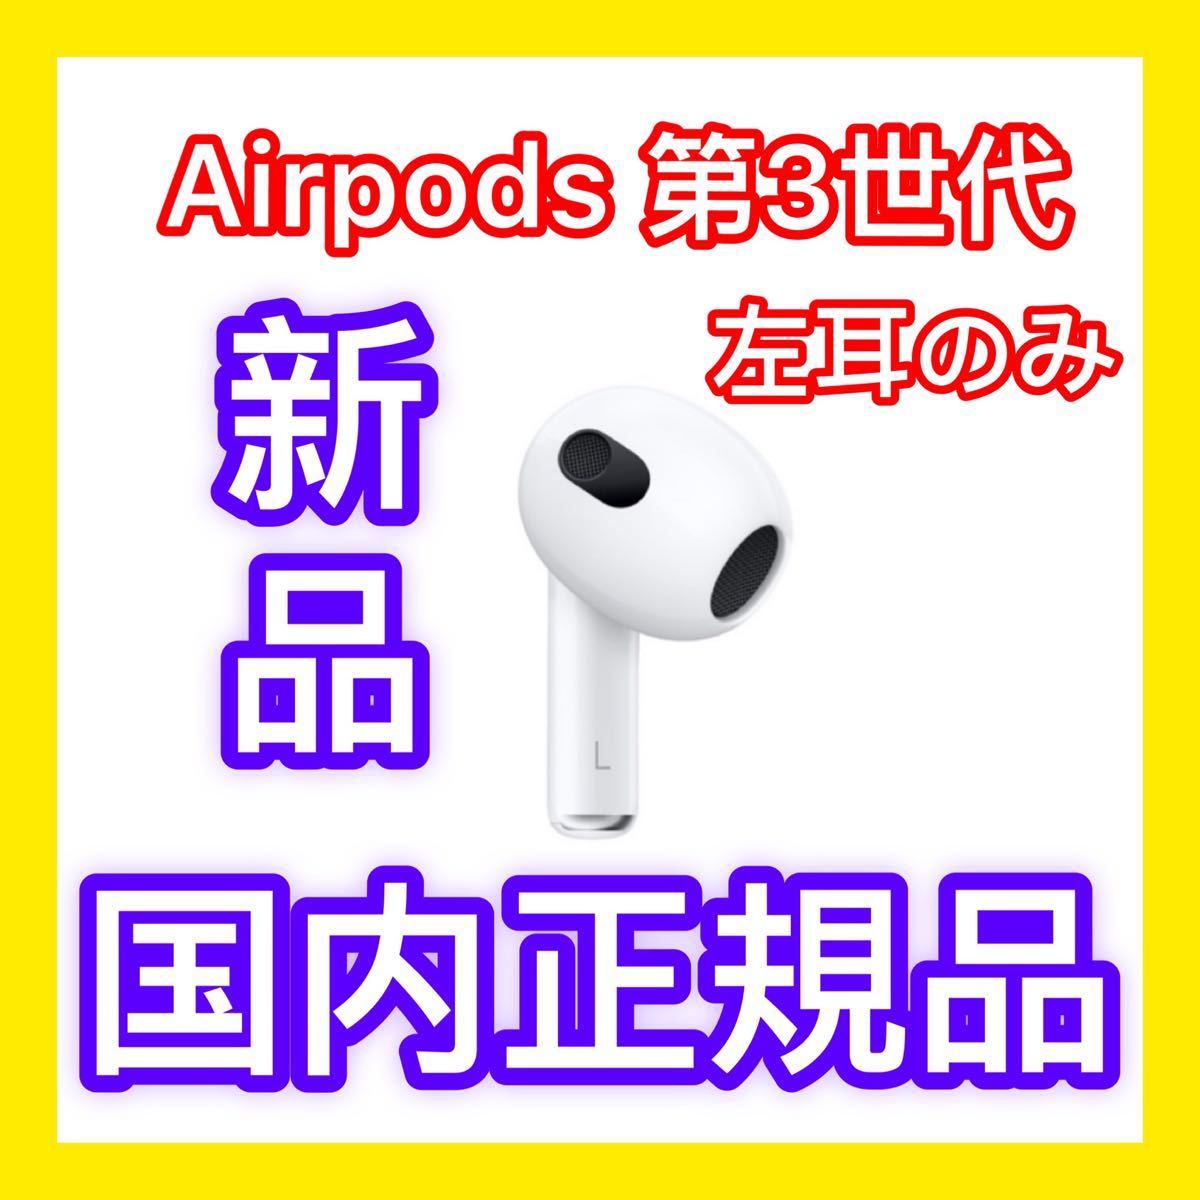 贅沢 AirPods pro 新品 左耳 エアーポッズ 純正 Apple